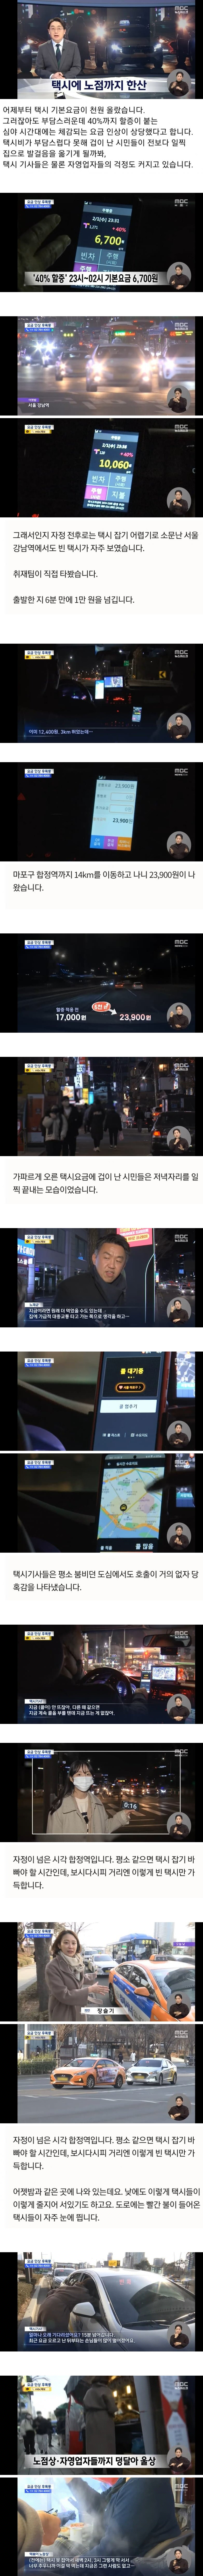 서울 택시요금 인상 후폭풍